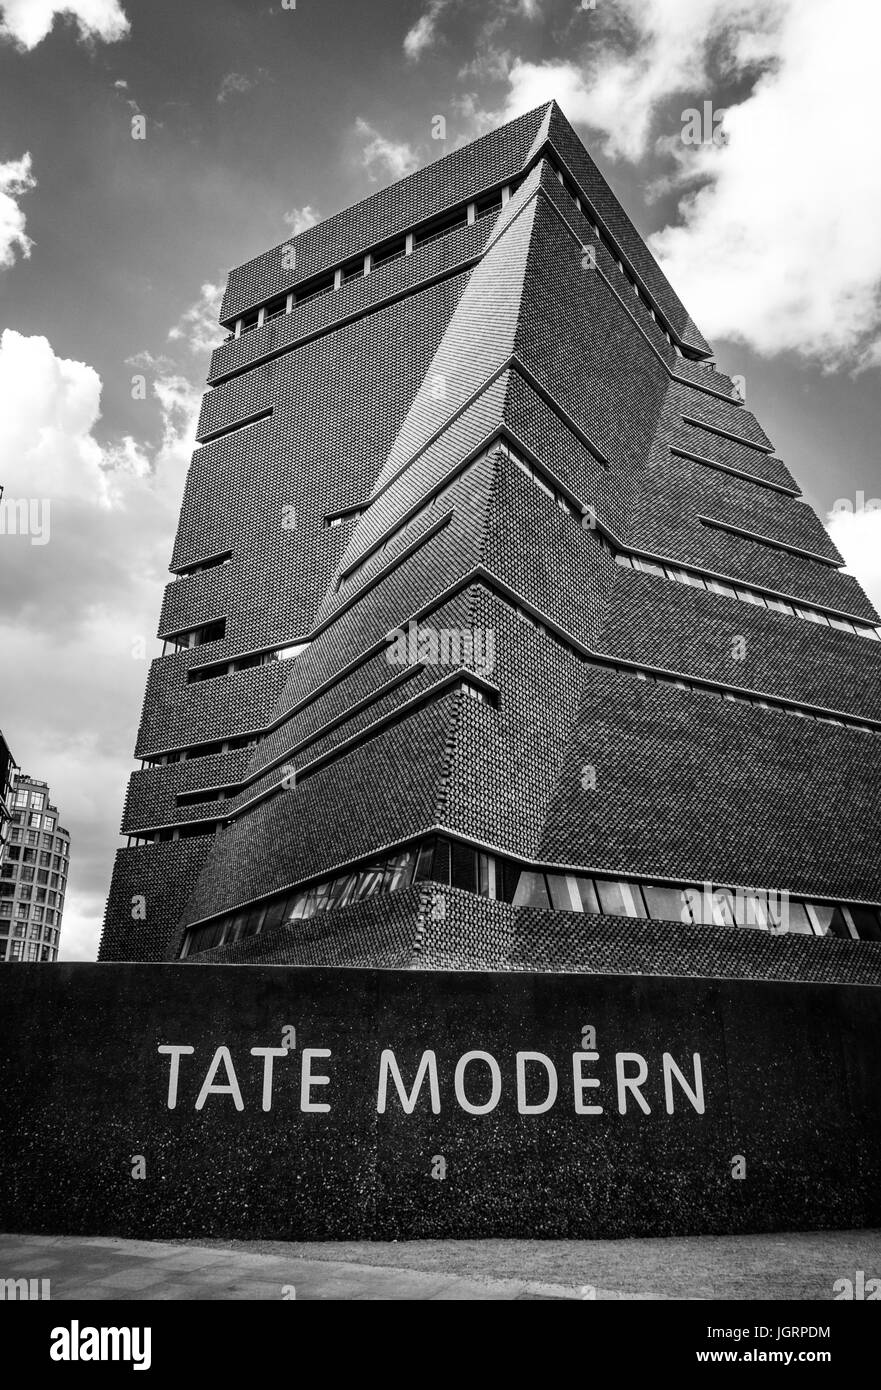 Maison de l'interrupteur, la nouvelle extension de la Tate Modern Art Gallery de Londres. Conçu par Herzog & de Meuron, architectes Banque D'Images